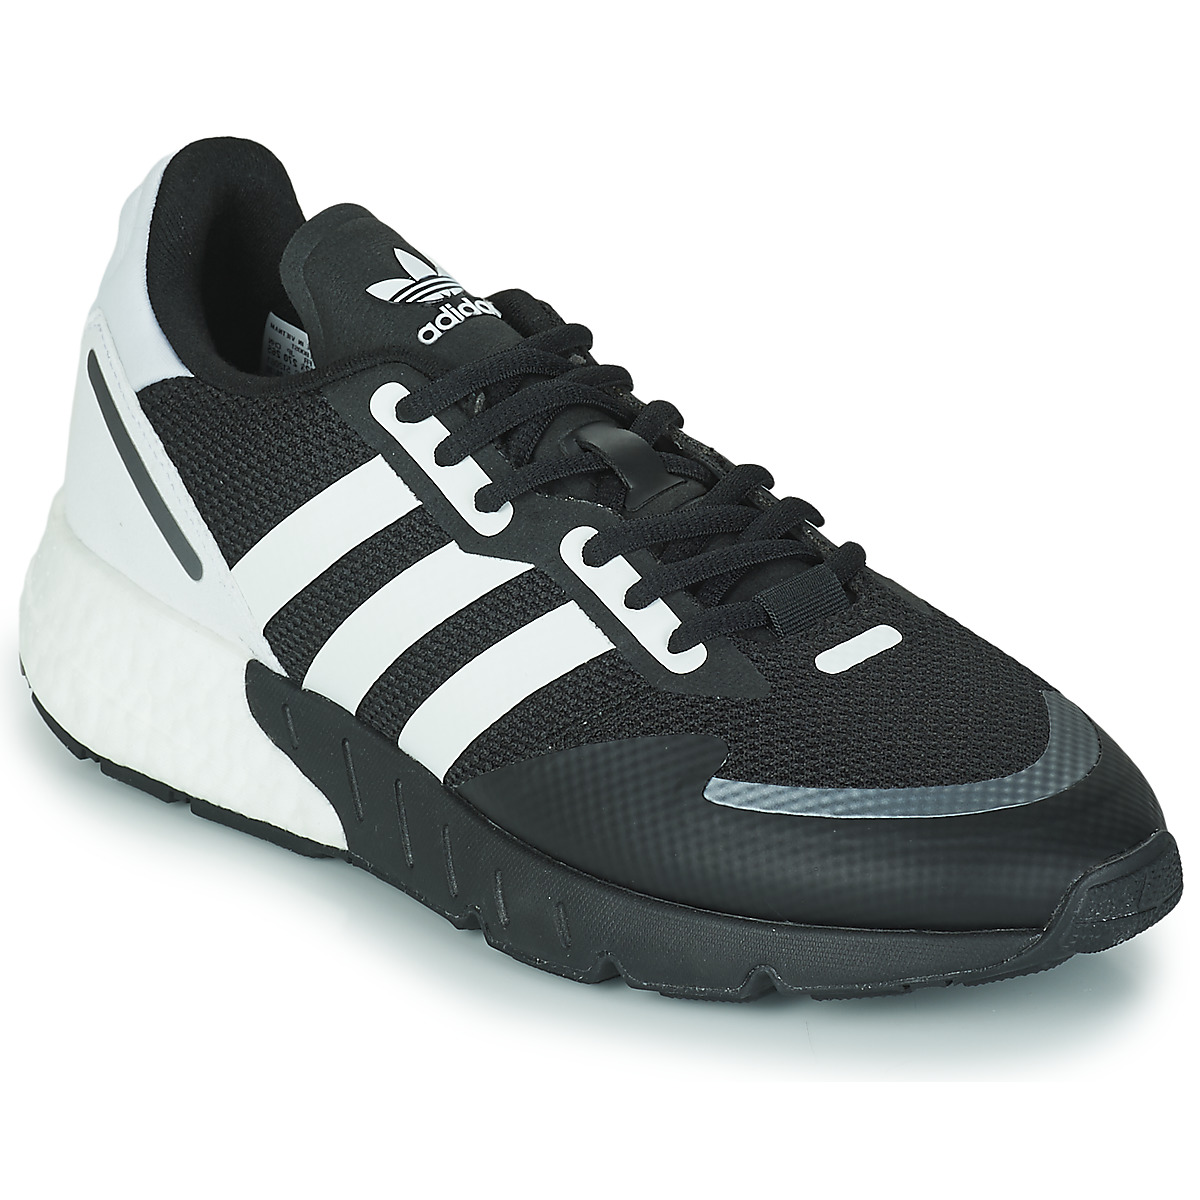 adidas Originals ZX 1K BOOST - Heren Sneakers Schoenen Zwart-Wit FX6515 - Maat EU 44 2/3 UK 10